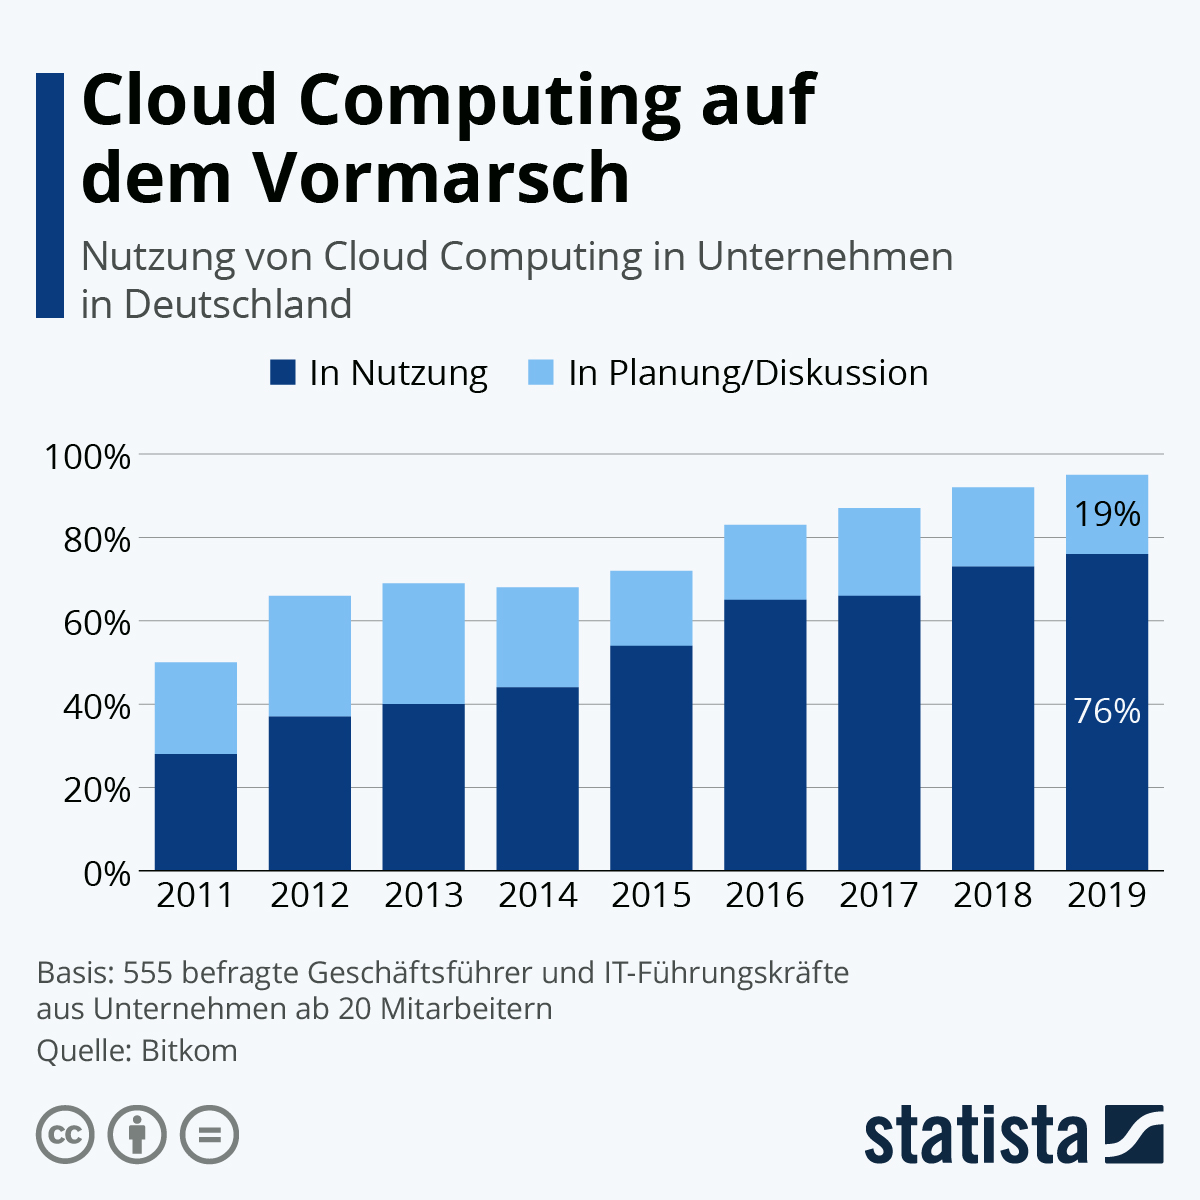 Cloud Computing auf dem Vormarsch